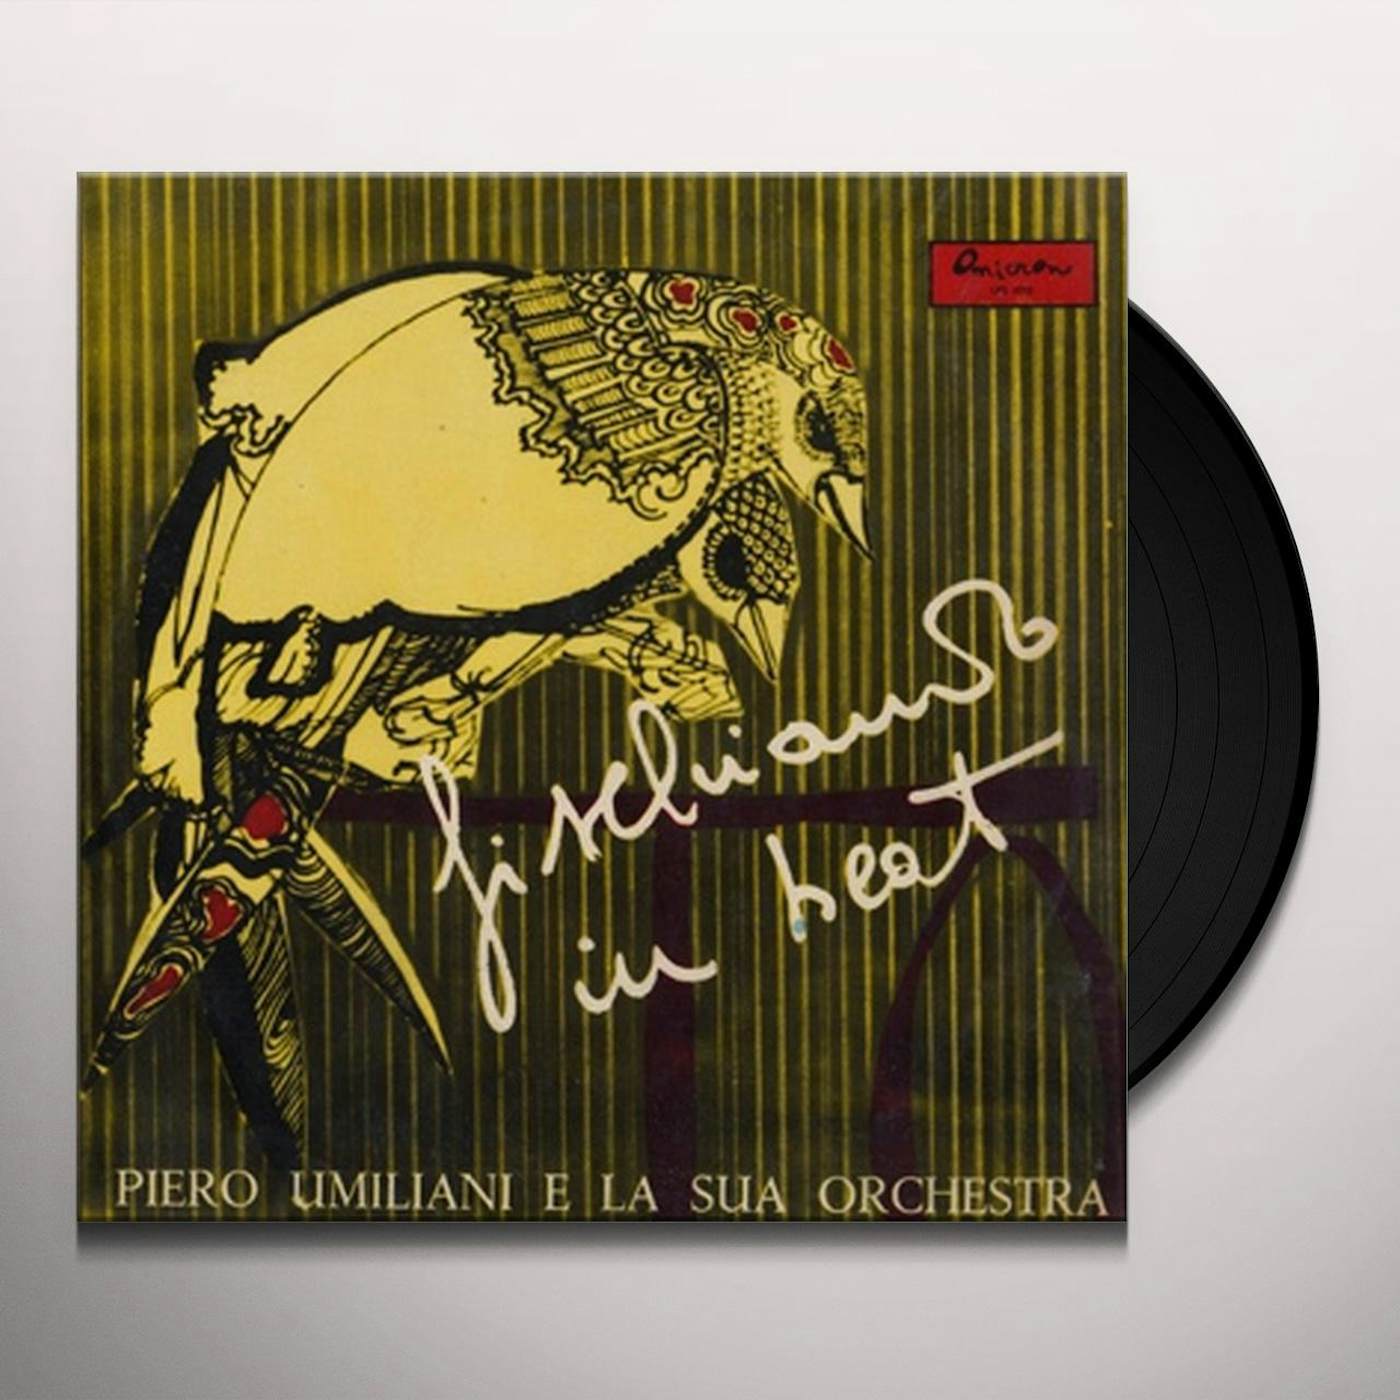 Piero Umiliani e la sua Orchestra FISCHIANDO IN BEAT Vinyl Record - Italy Release